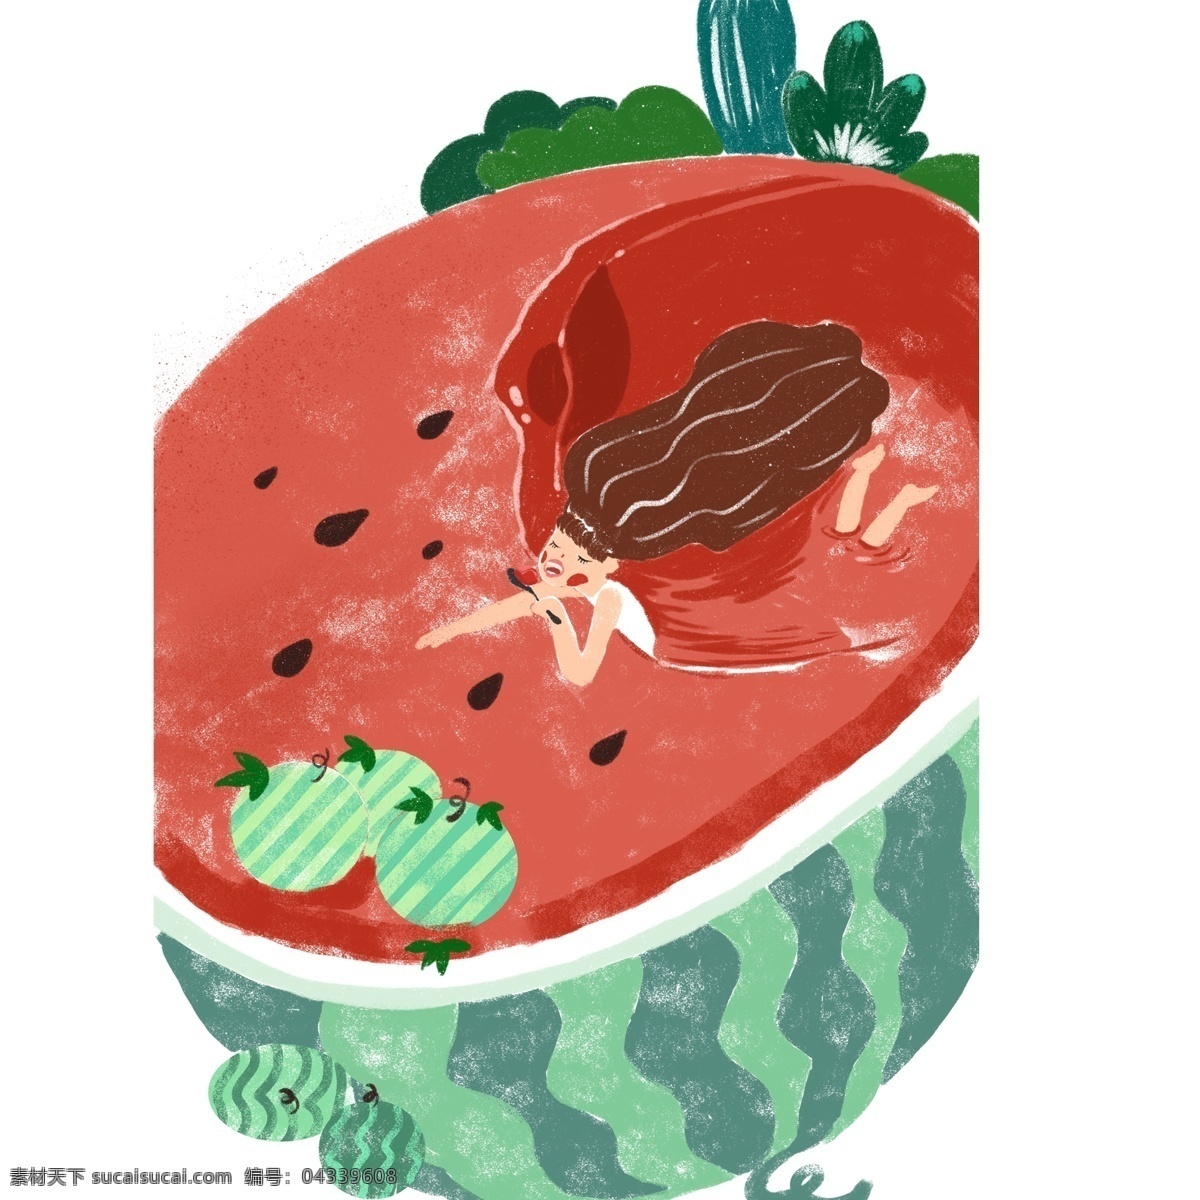 彩色 圆弧 创意 西瓜 食物 元素 美食 味道 吃的 纹理 长发 青春 夏季水果